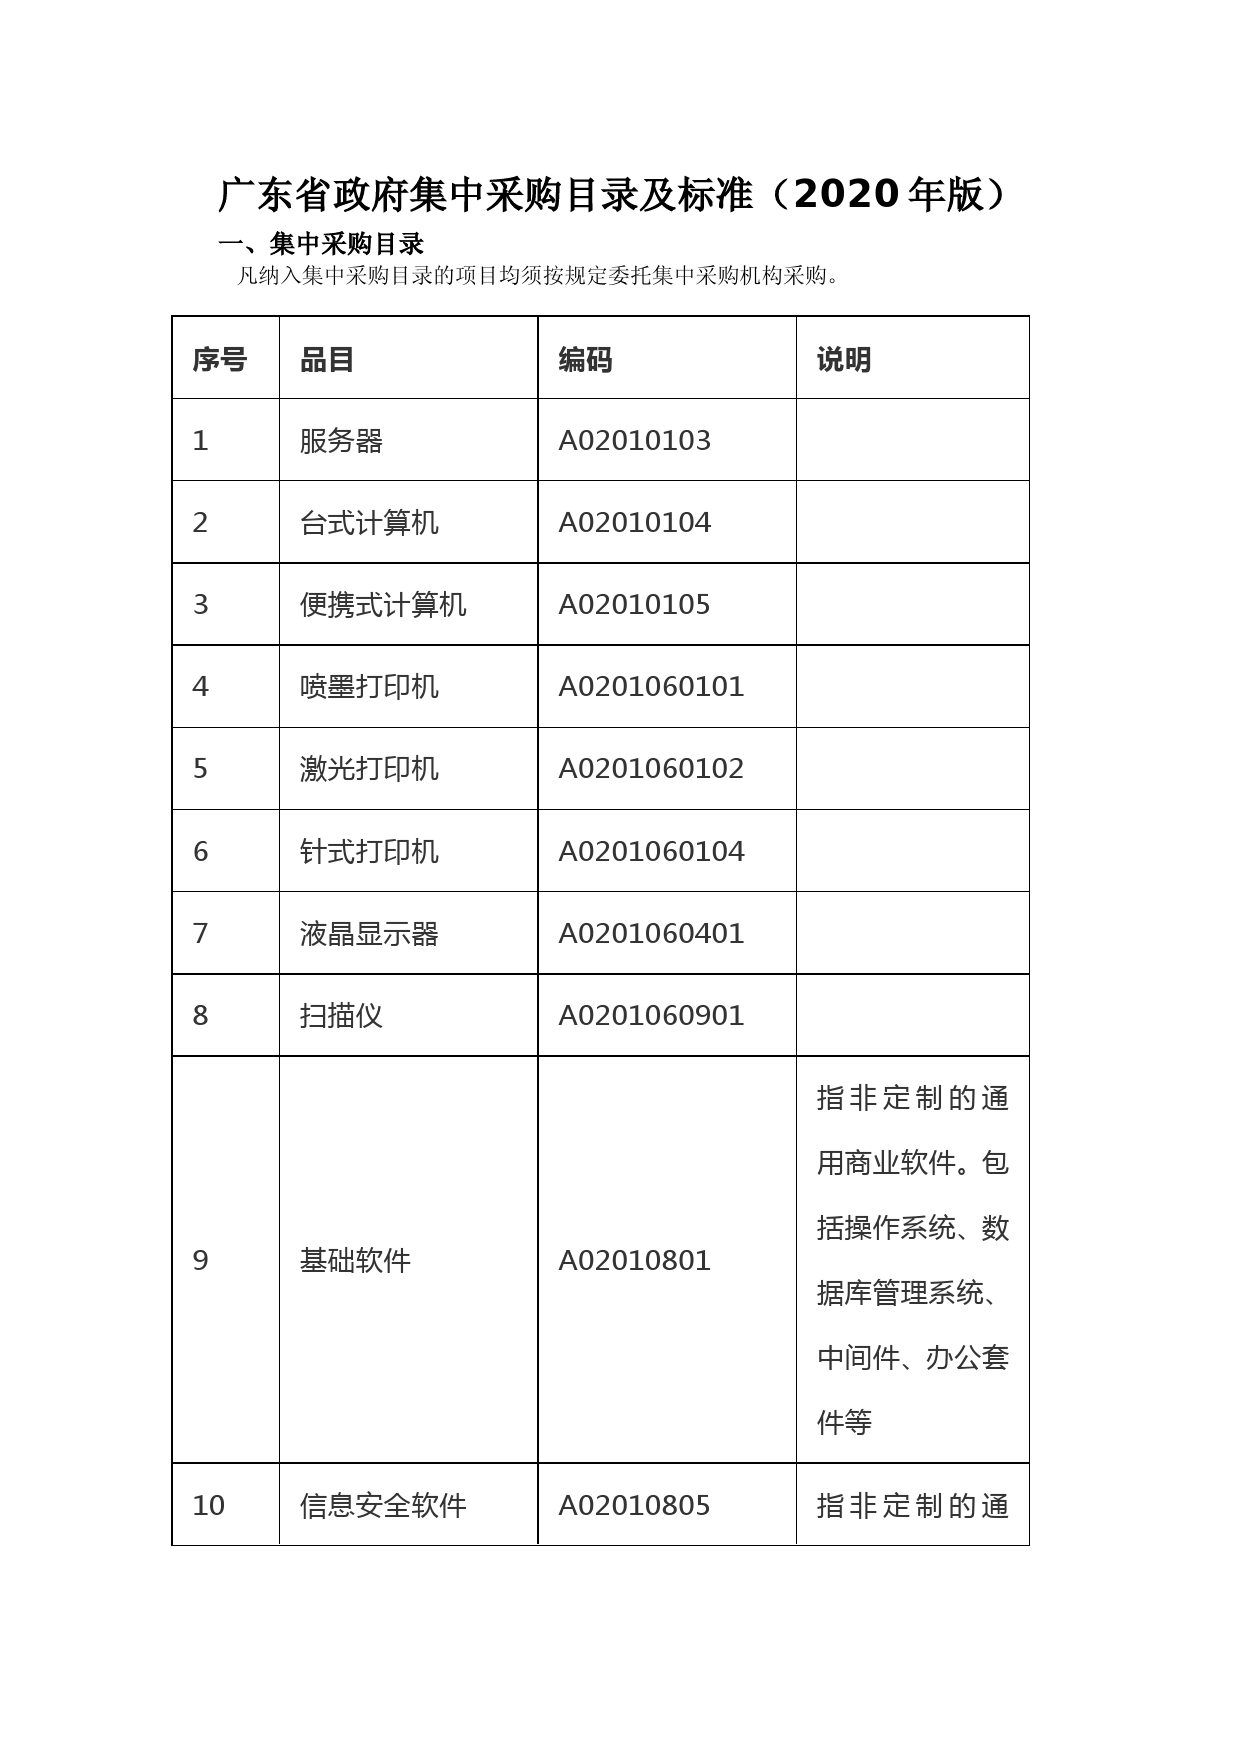 广东省政府集中采购目录及标准(2020年版)